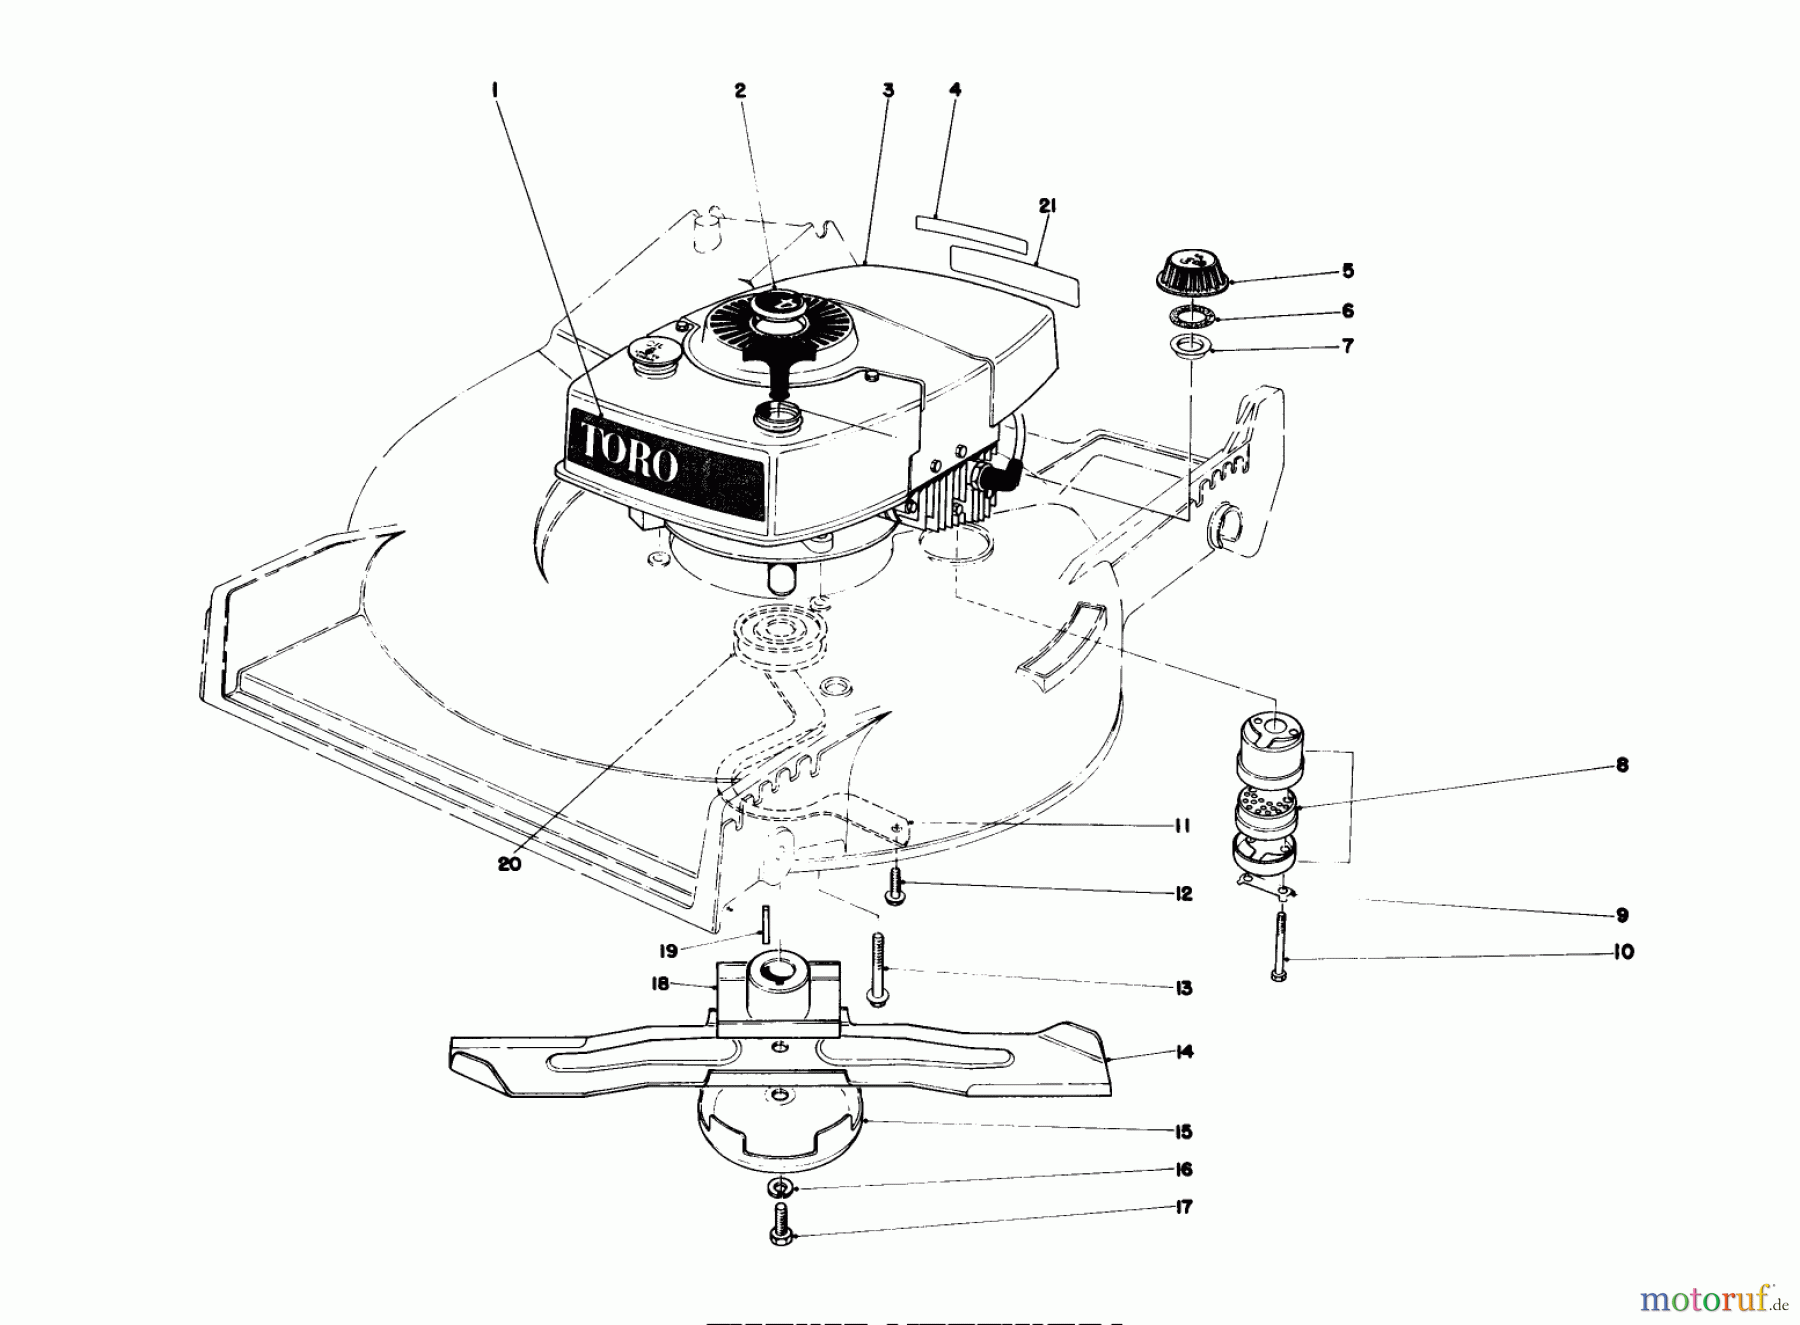  Toro Neu Mowers, Walk-Behind Seite 1 20810 - Toro Lawnmower, 1980 (0000001-0999999) ENGINE ASSEMBLY